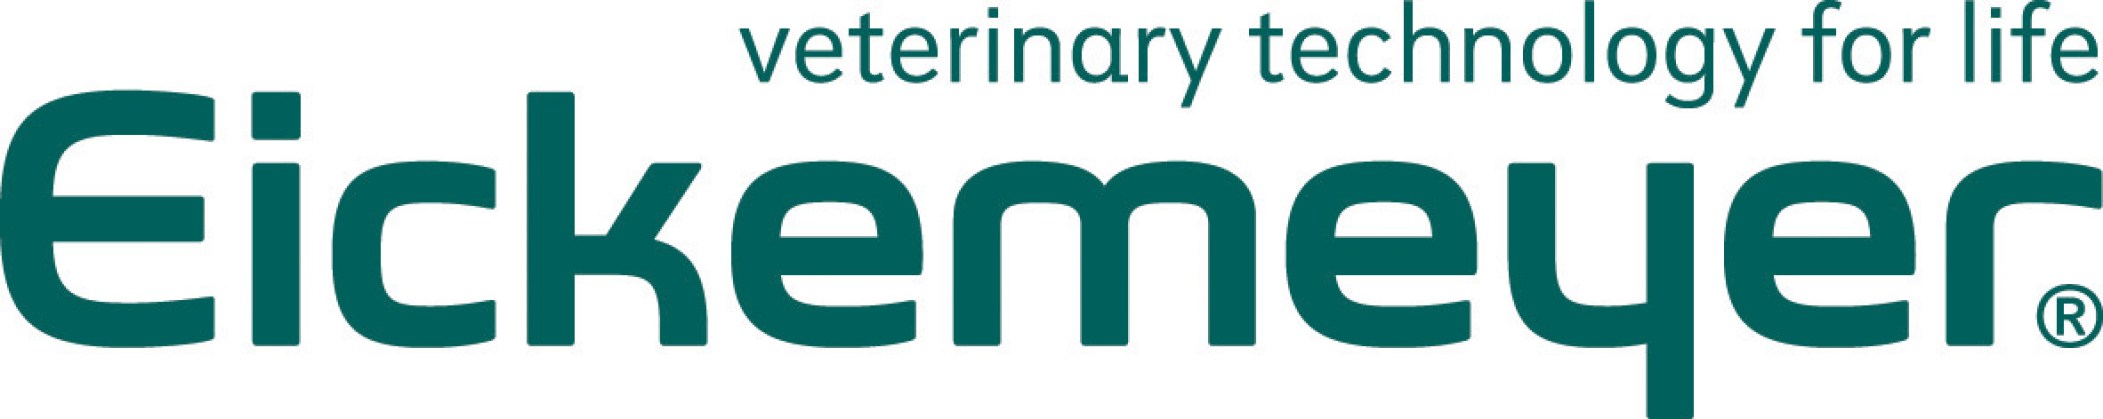 Eickemeyer-Logo11